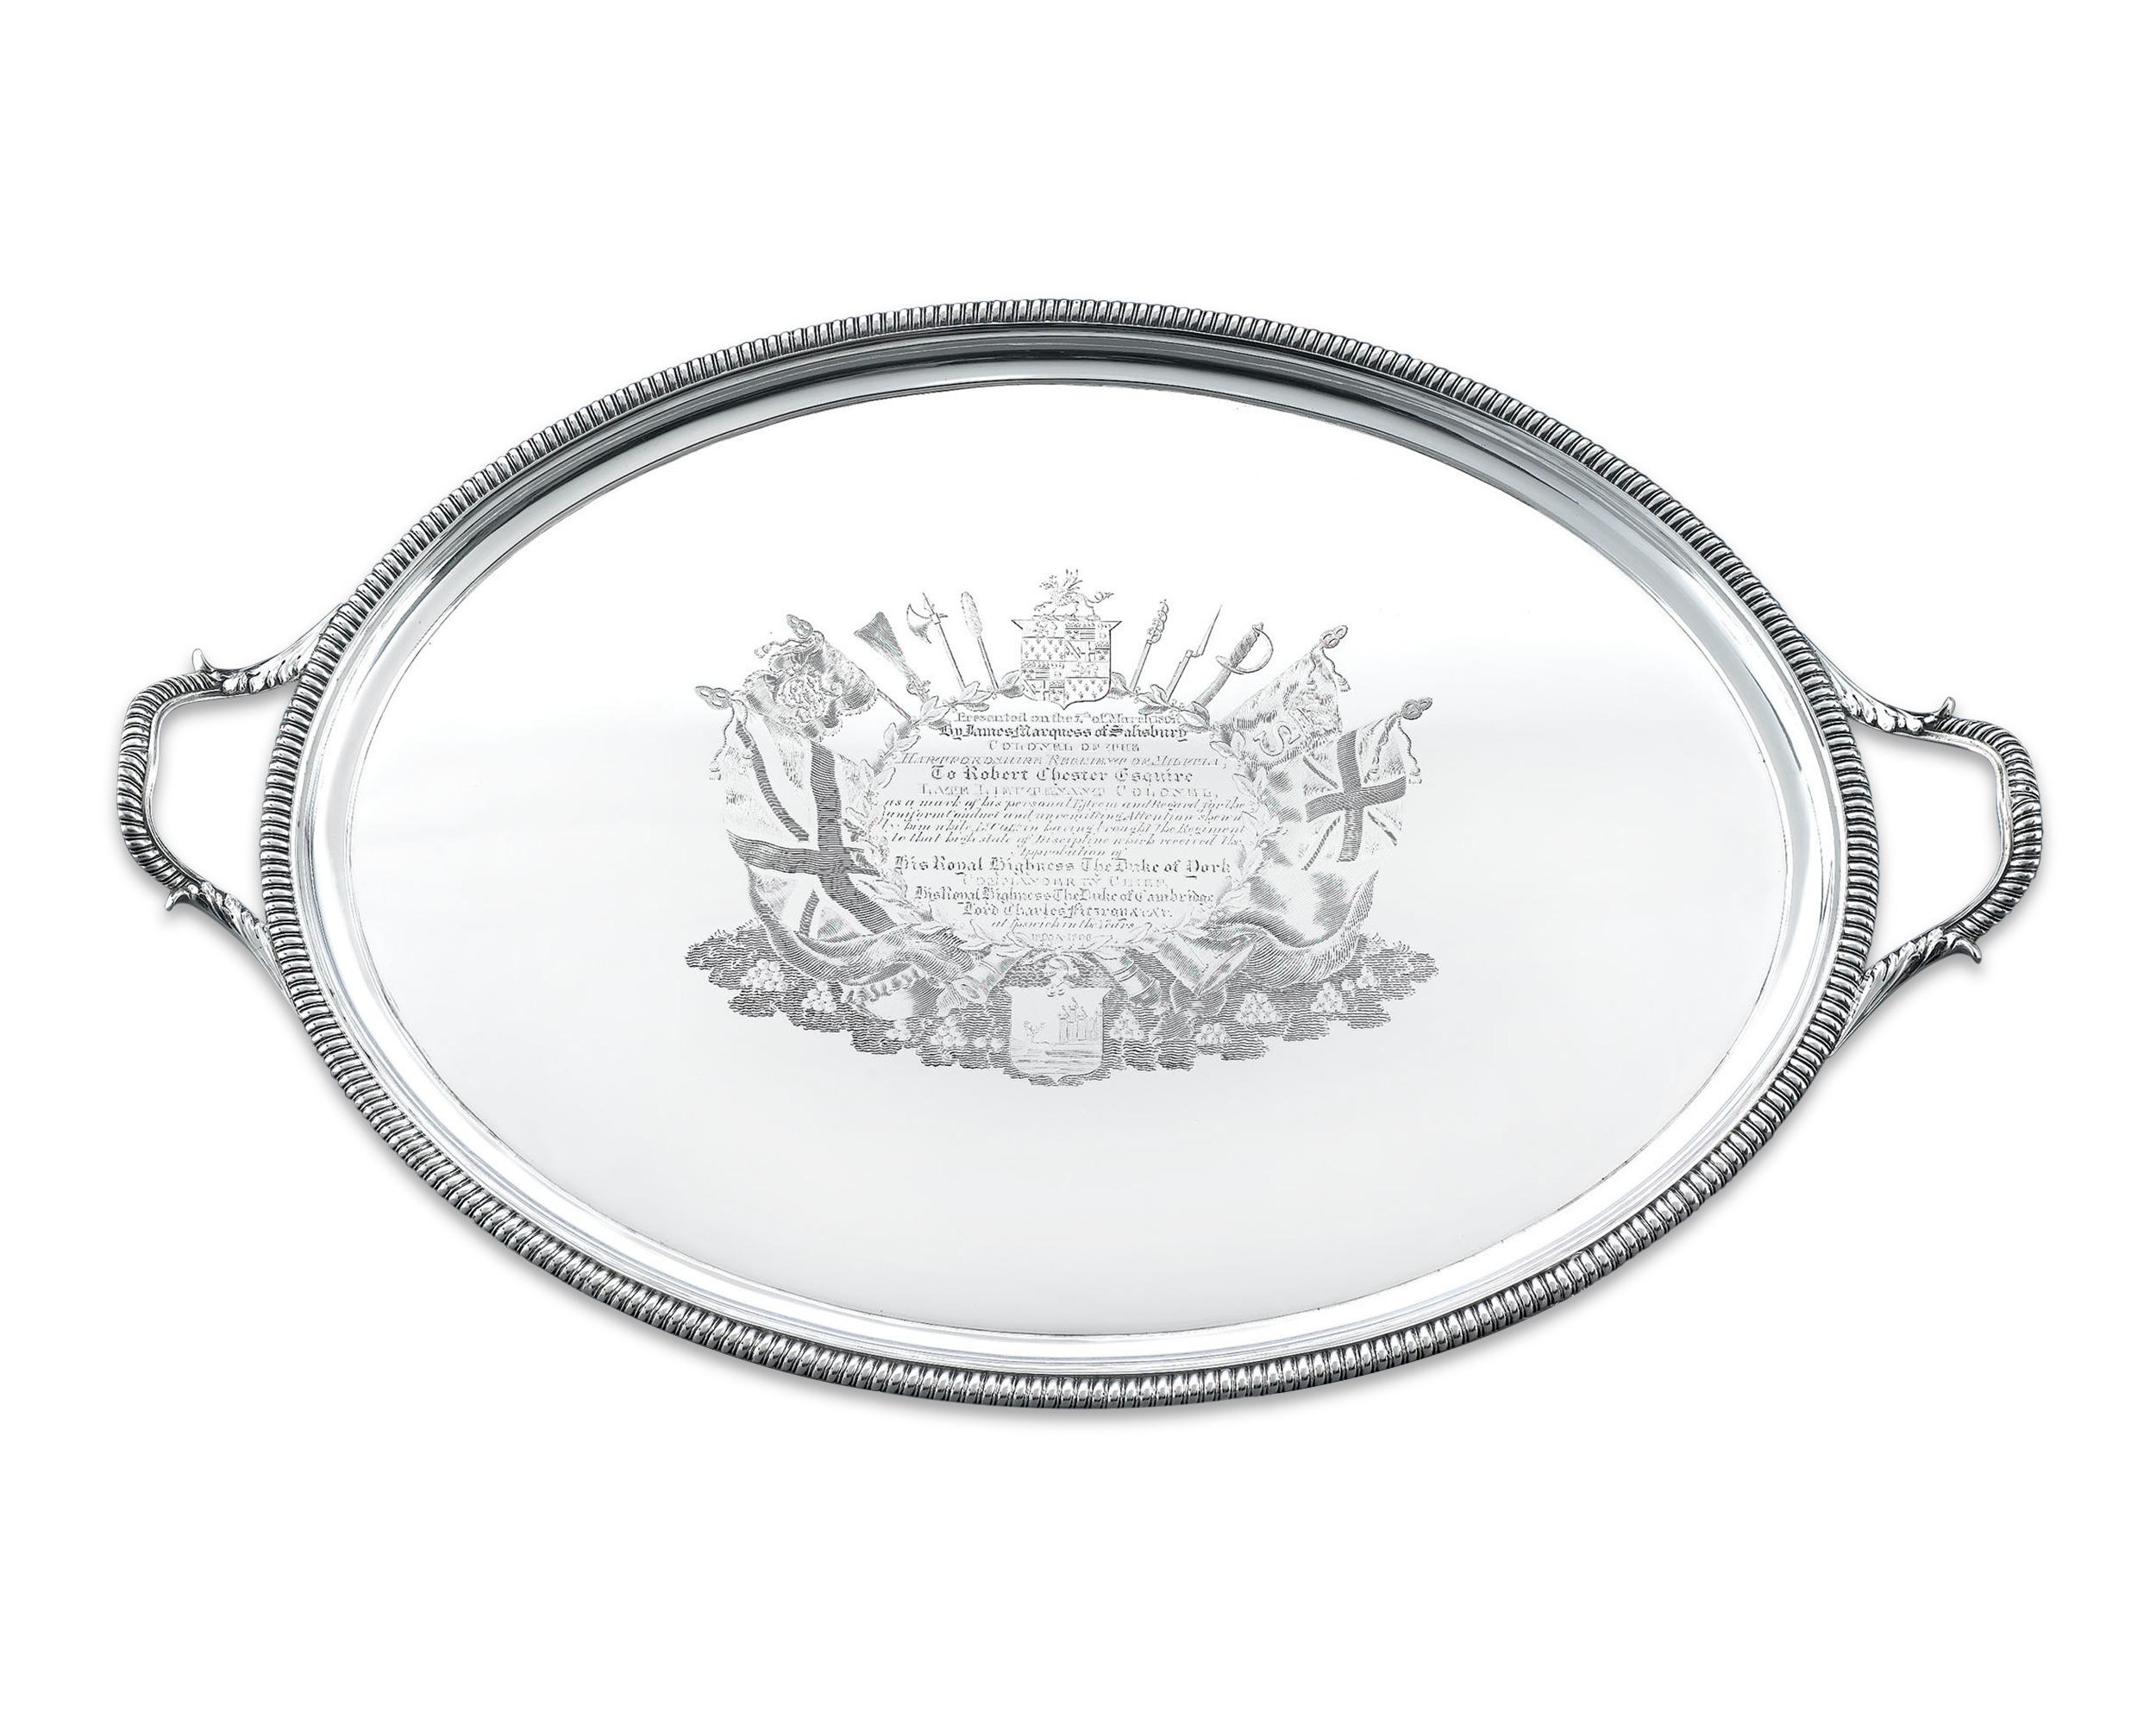 Dieses faszinierende Silbertablett von George III. ist ein Meisterwerk englischer Kunstfertigkeit. Aufwändig ziseliert und graviert, ist es ein prestigeträchtiges Erinnerungsgeschenk für den Dienst. Das Tablett ruht auf 4 Klammerfüßen mit ovalen